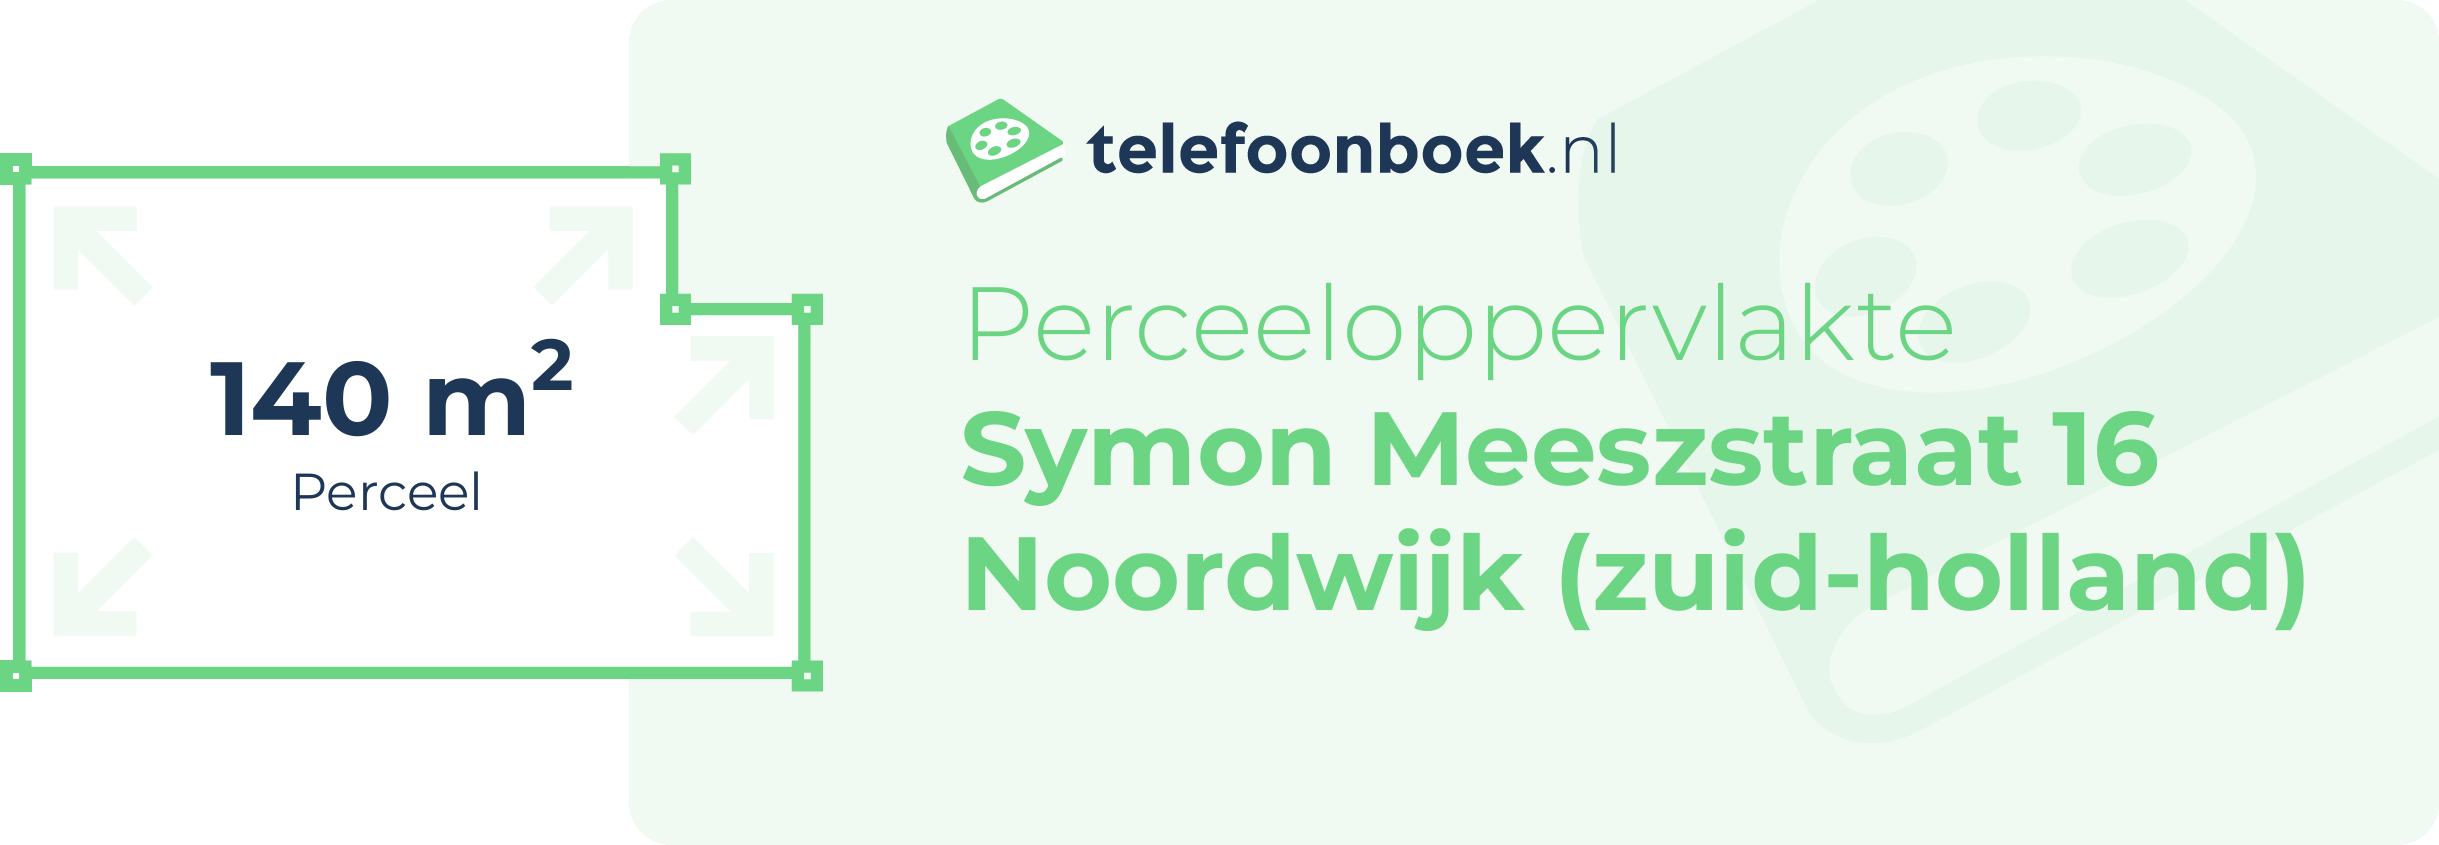 Perceeloppervlakte Symon Meeszstraat 16 Noordwijk (Zuid-Holland)